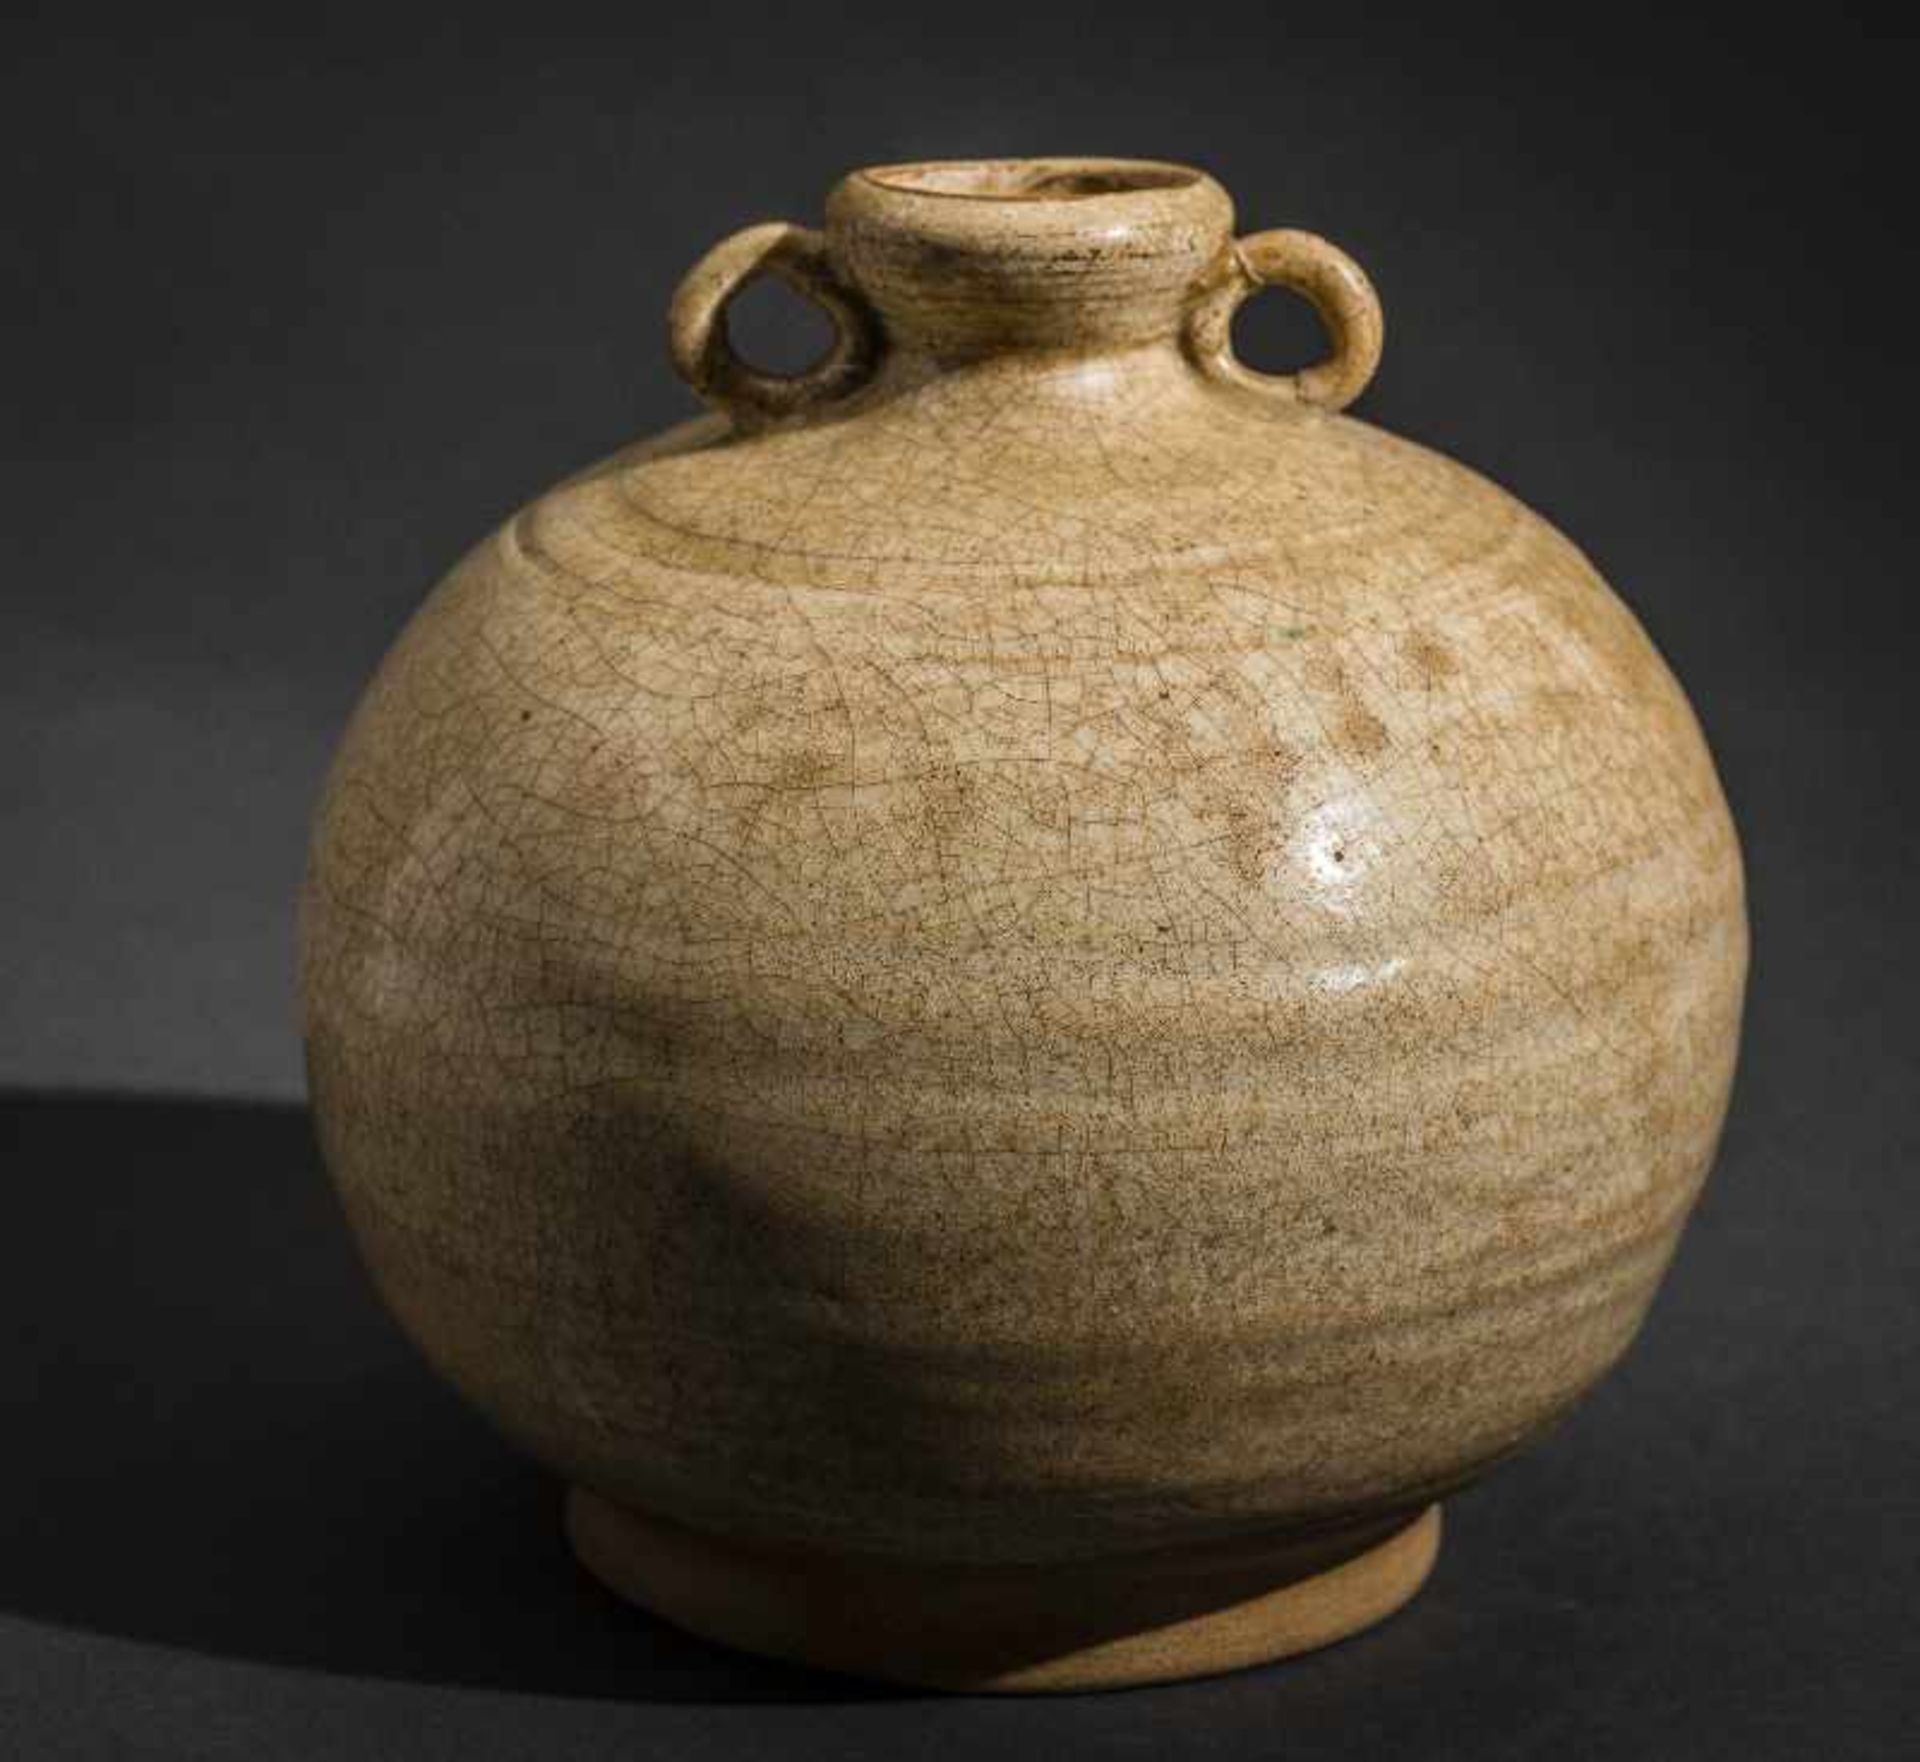 KUGELIGES GEFÄSS MIT ÖSENHENKEL Glasierte Keramik. China, Qing (1644-1911) Lichte Glasur mit